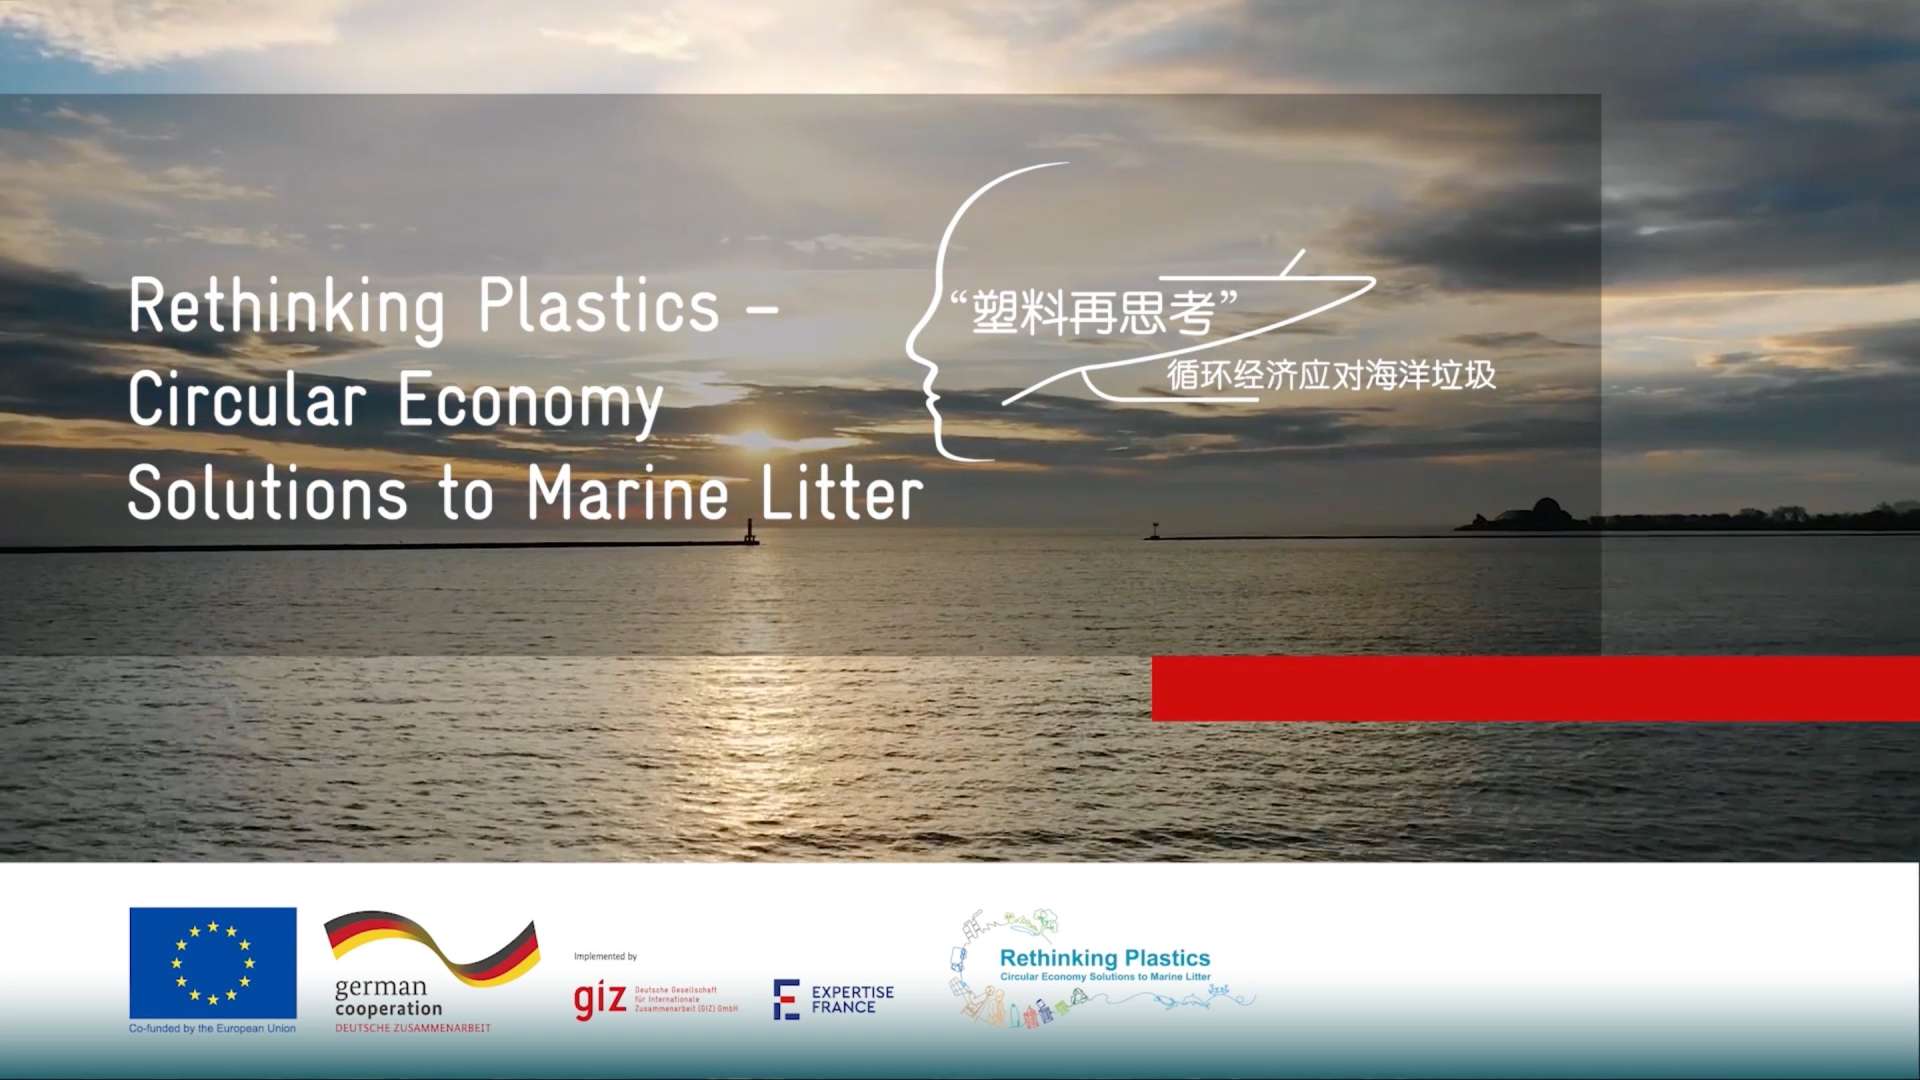 “塑料再思考"”循环经济应对海洋垃圾---综述篇